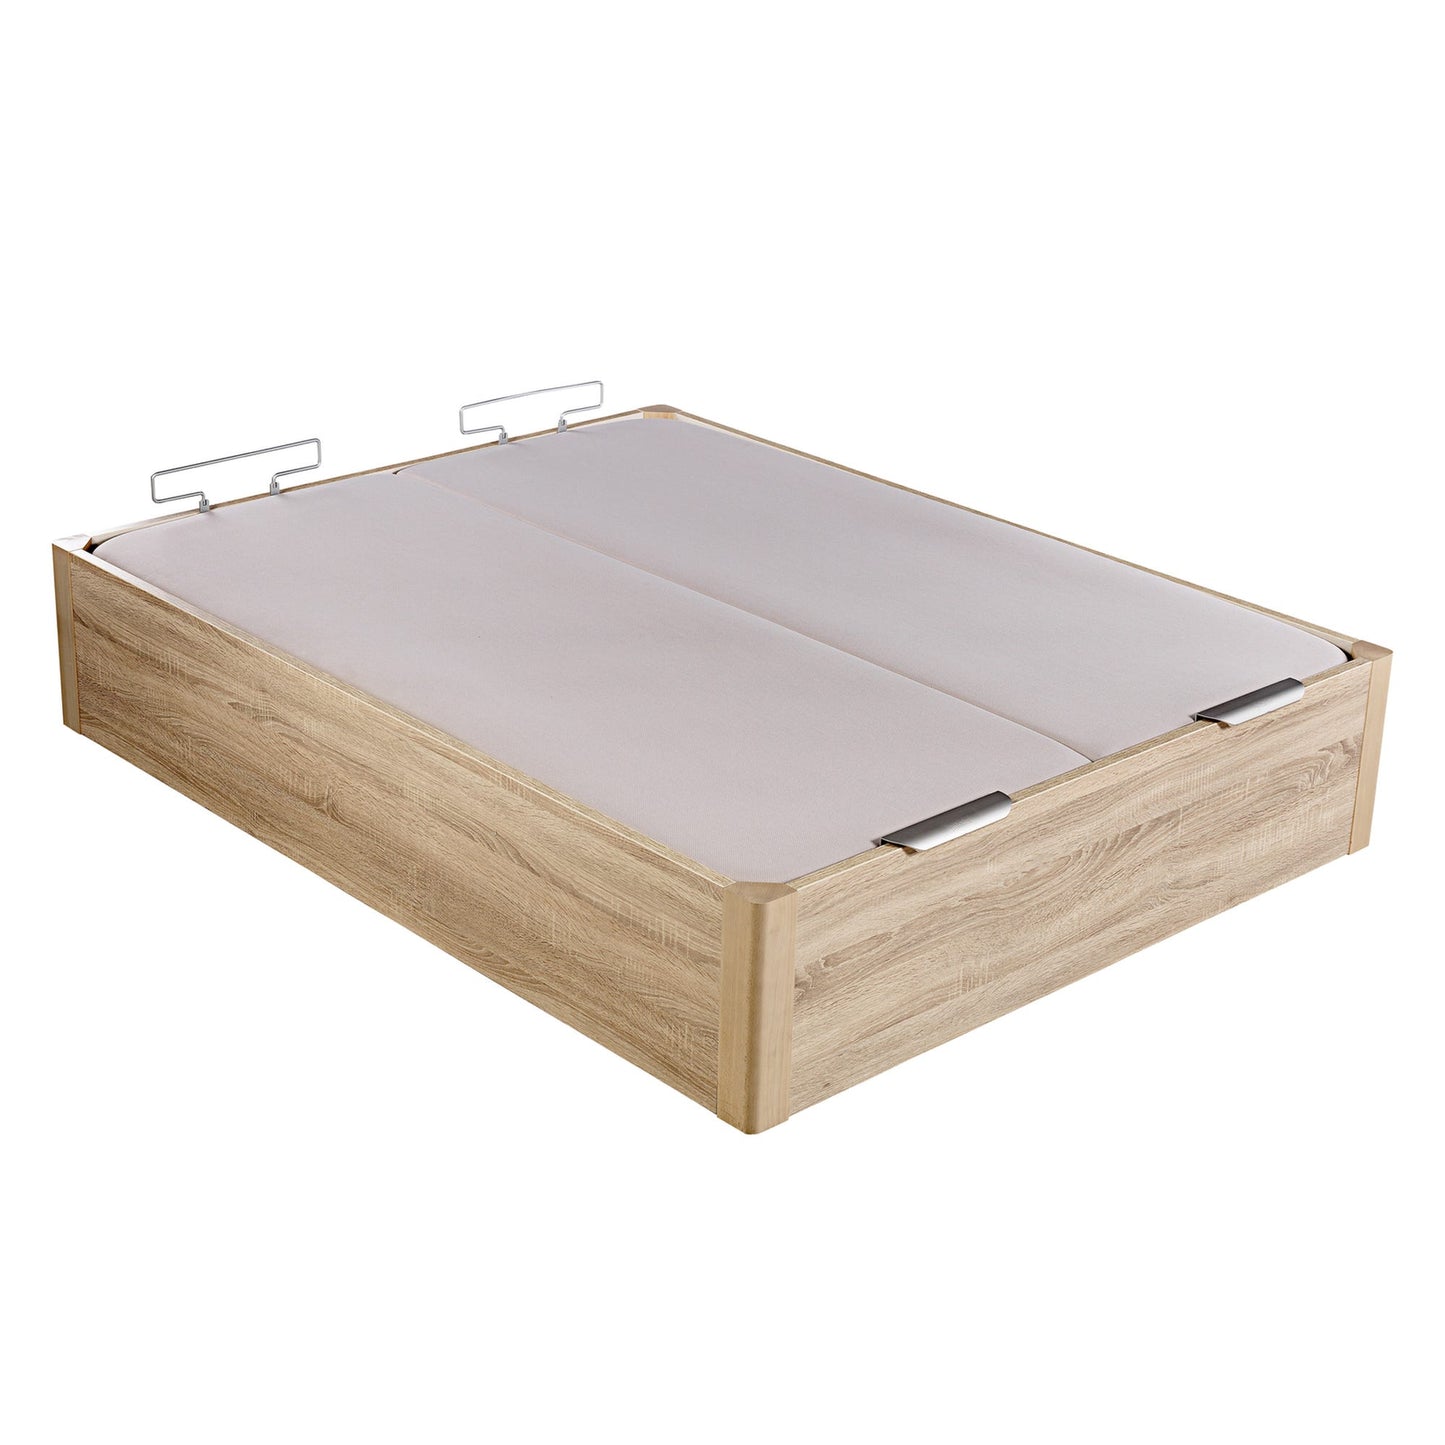 Canapé abatible de madera de alta capacidad tapa doble de color natural - DESIGN - 150x210